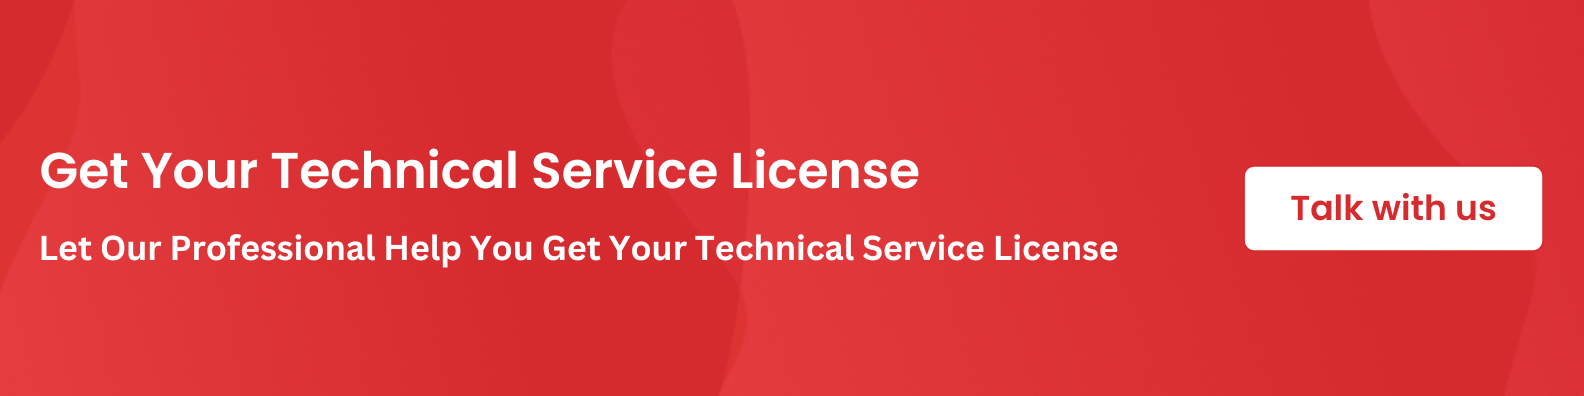 echnical service license in Dubai 